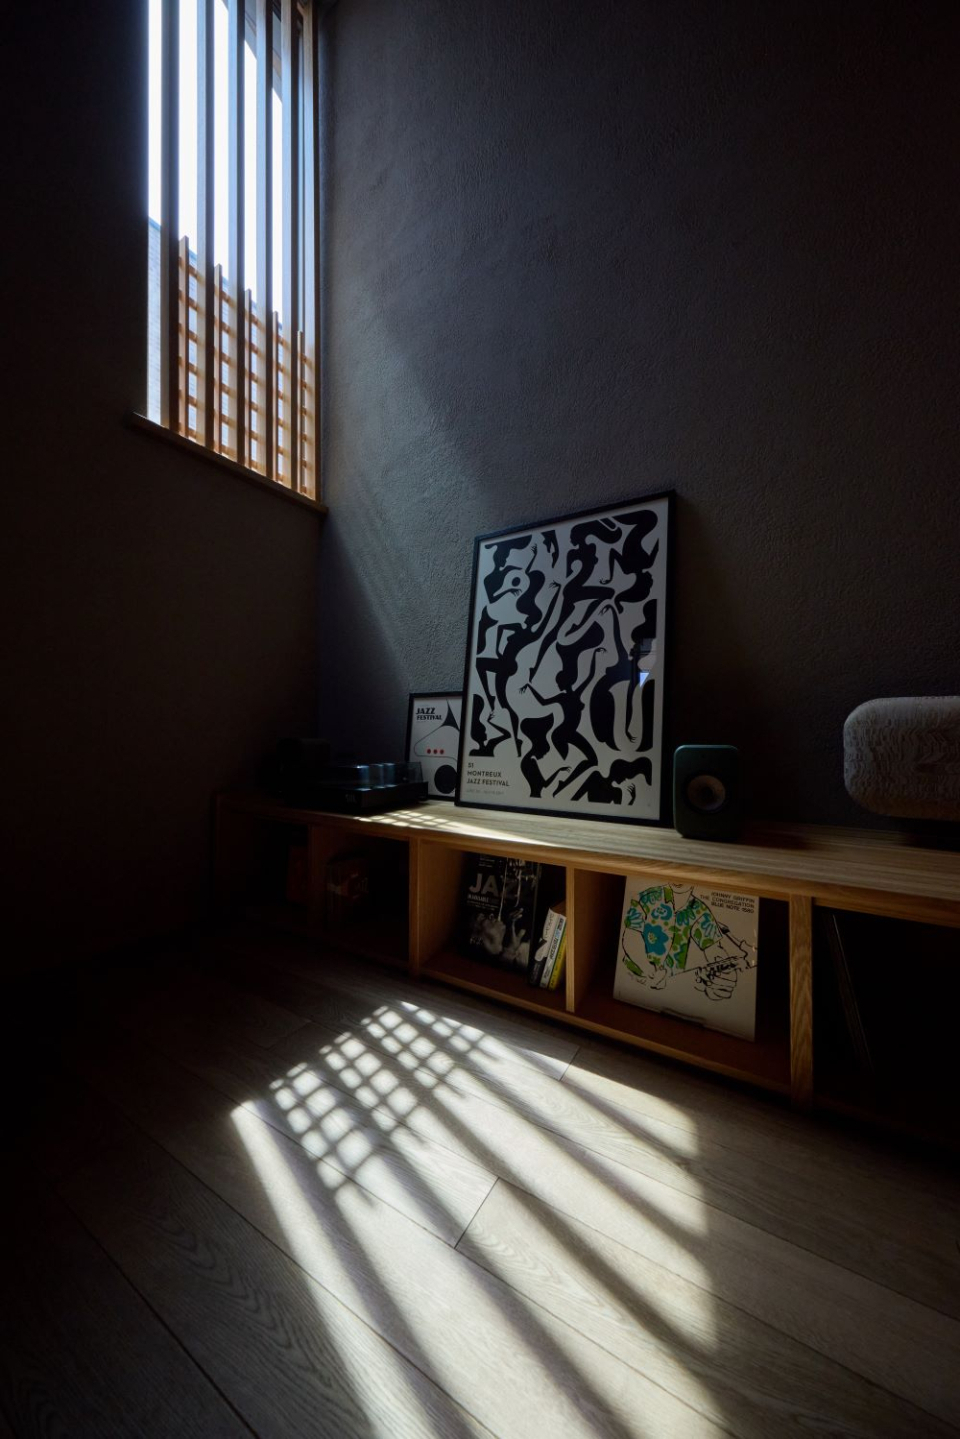 吹抜けの窓から入ってくる光が作る影。
時間と共に変化し、お部屋の表情の変化をお楽しみください。